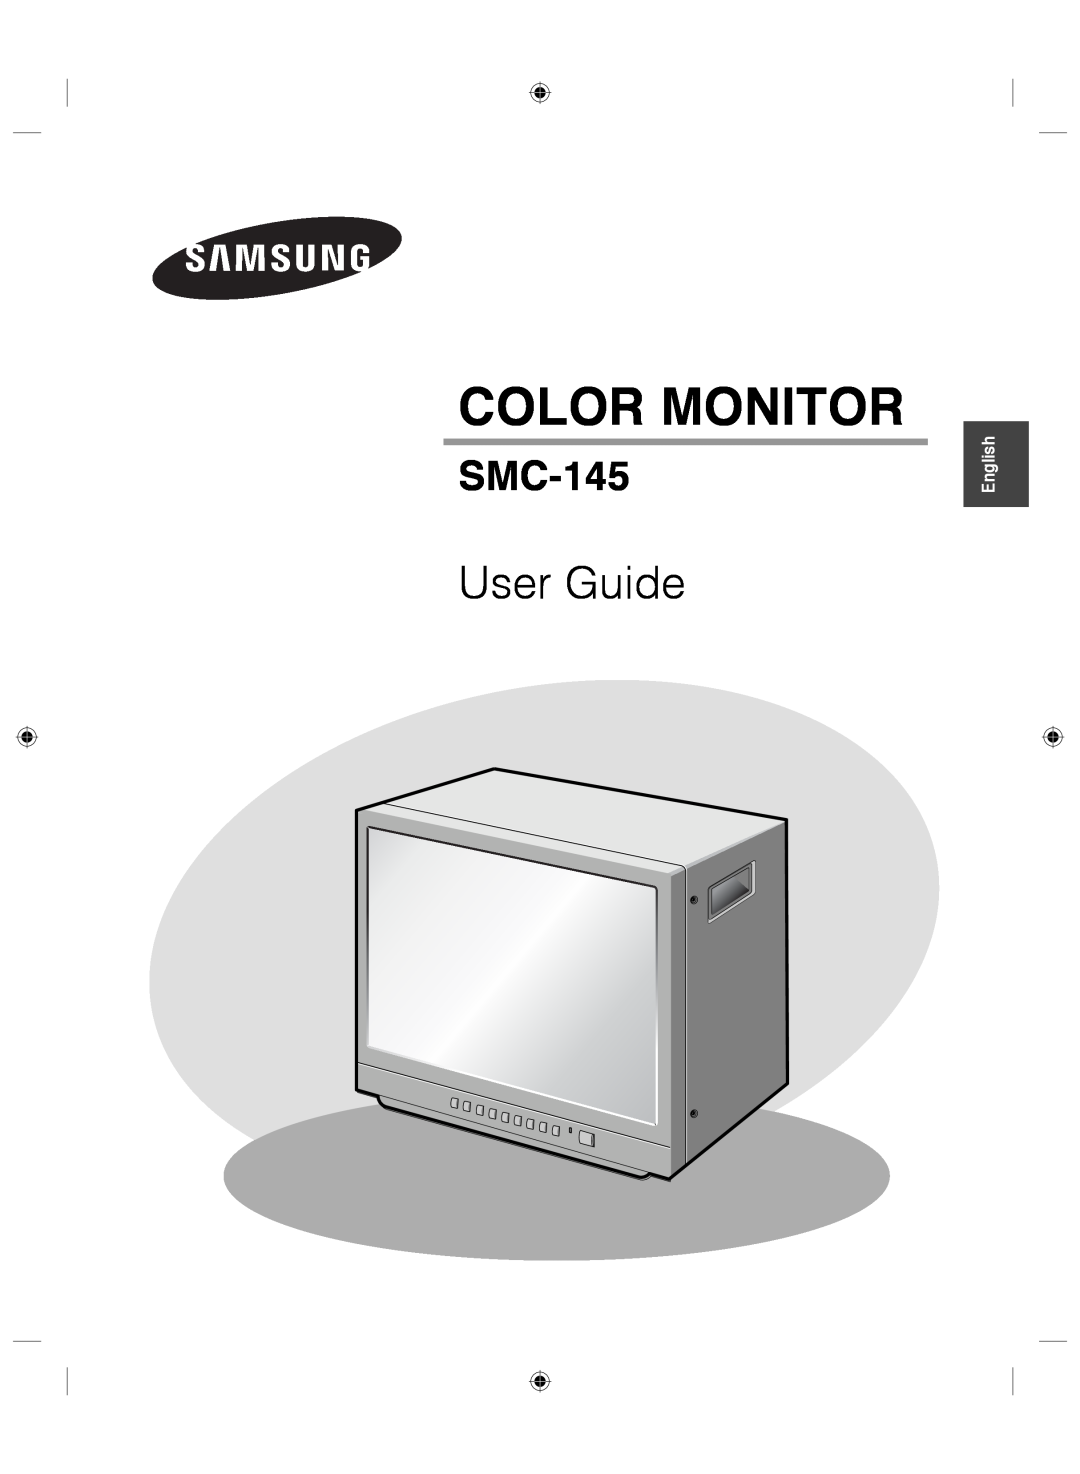 Samsung SMC-145 manual Color Monitor, User Guide, English 